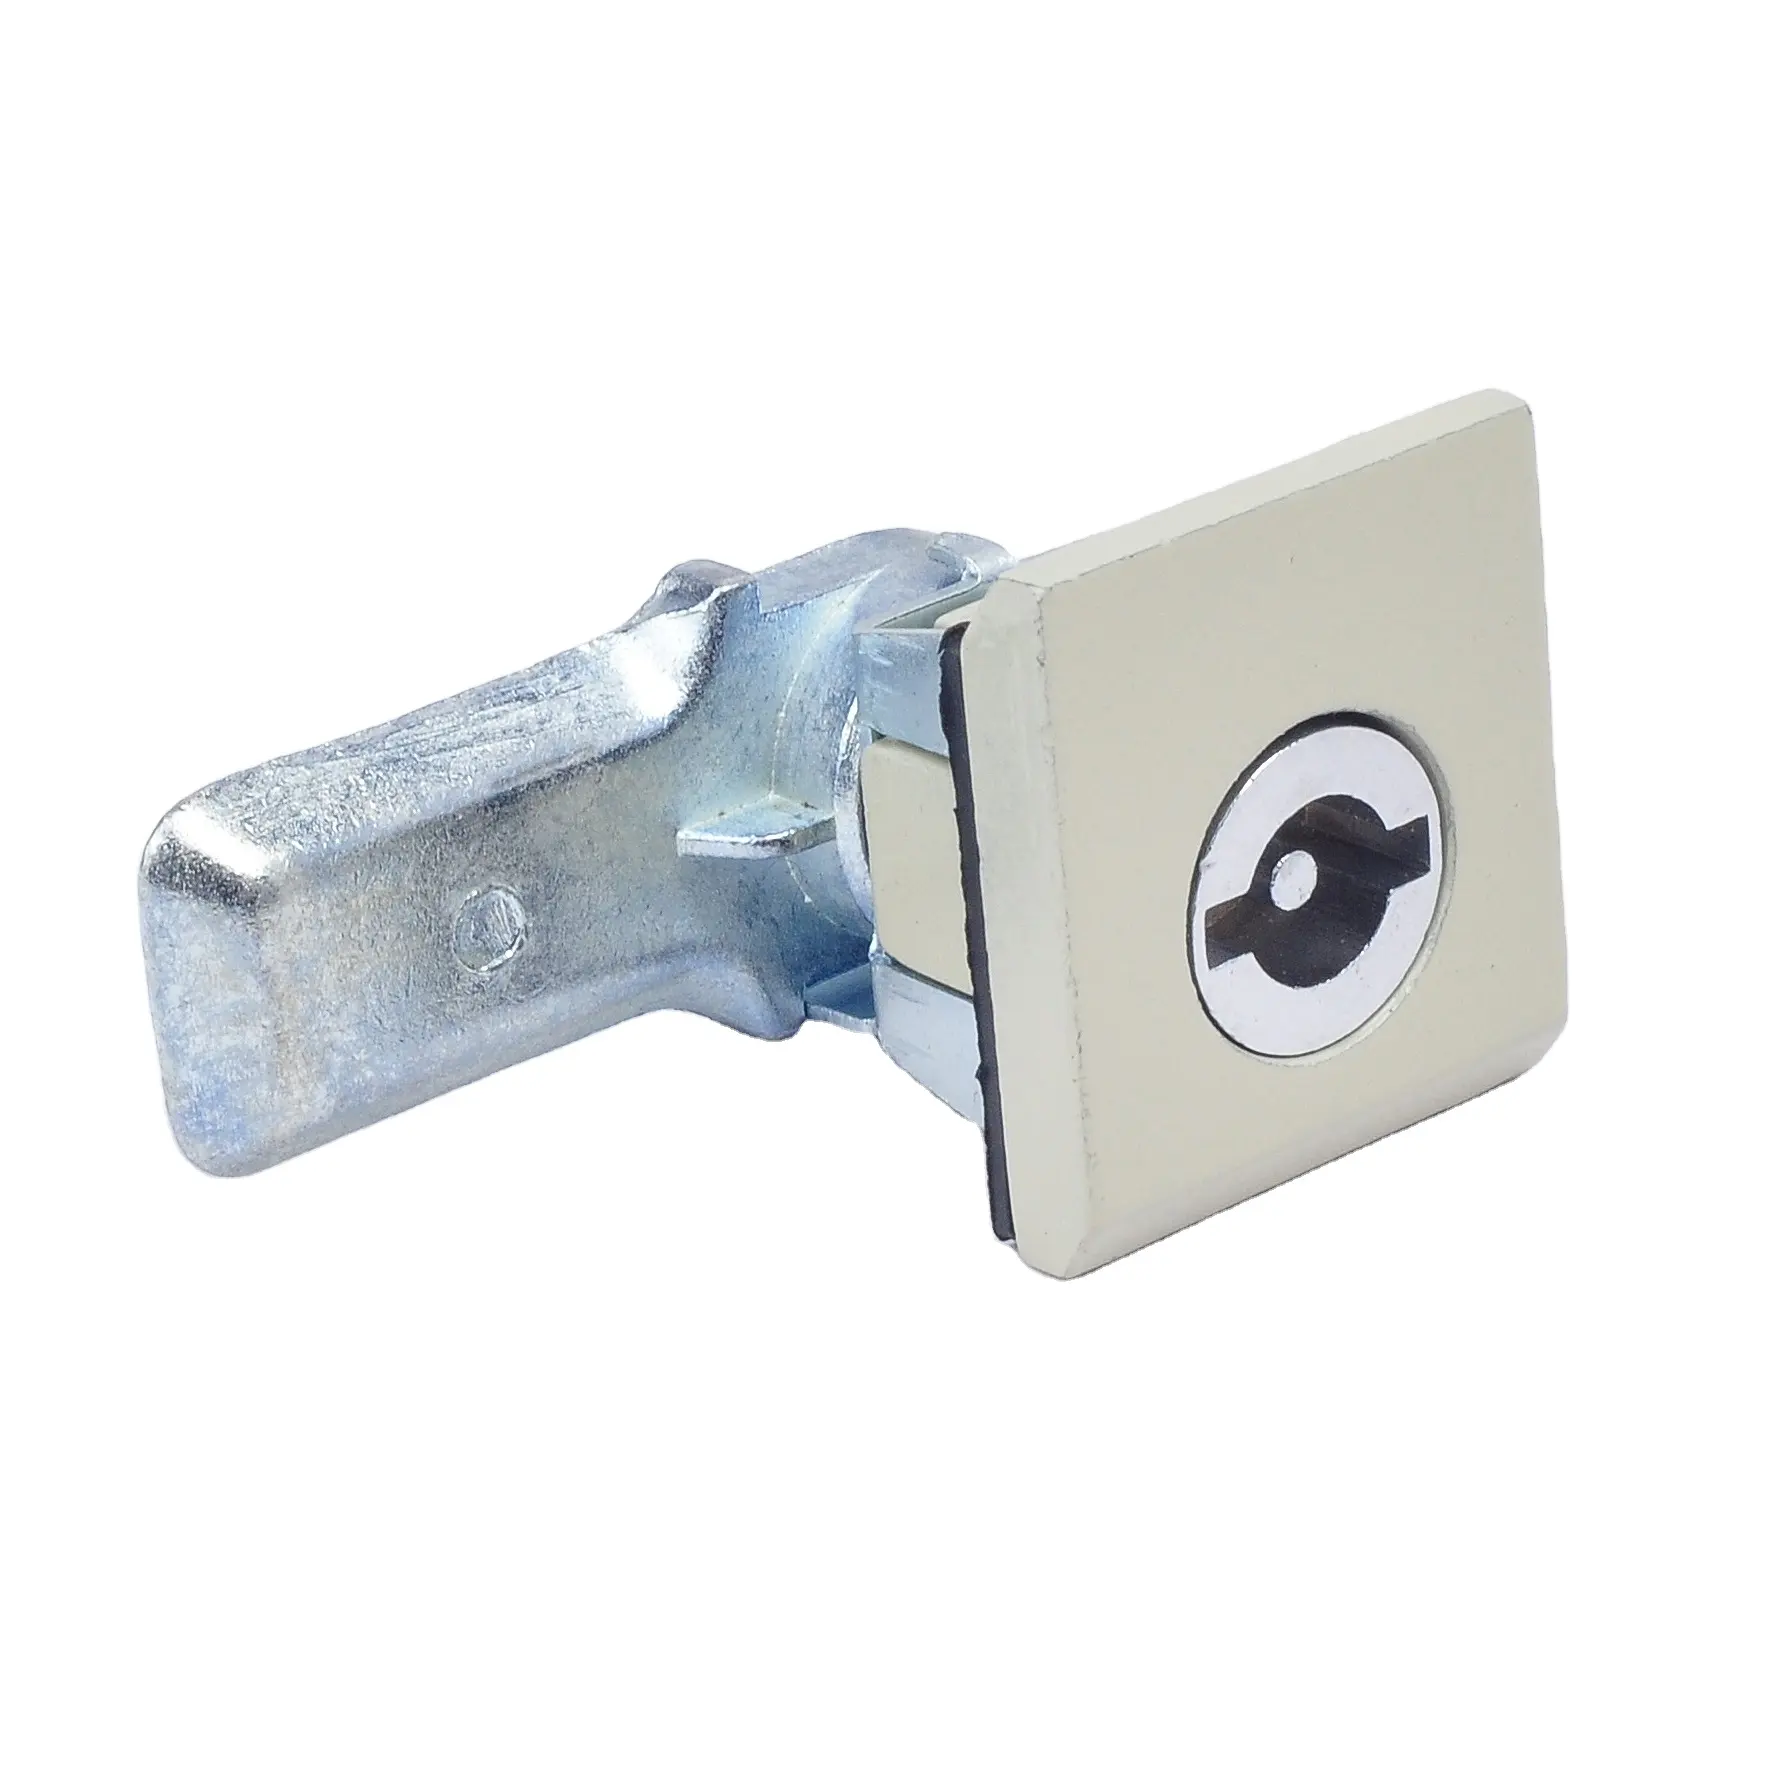 CHYF Hardware tubular cerradura leva pestillo gabinete puerta cerradura 1/4 cuarto de giro manija cerradura MS813